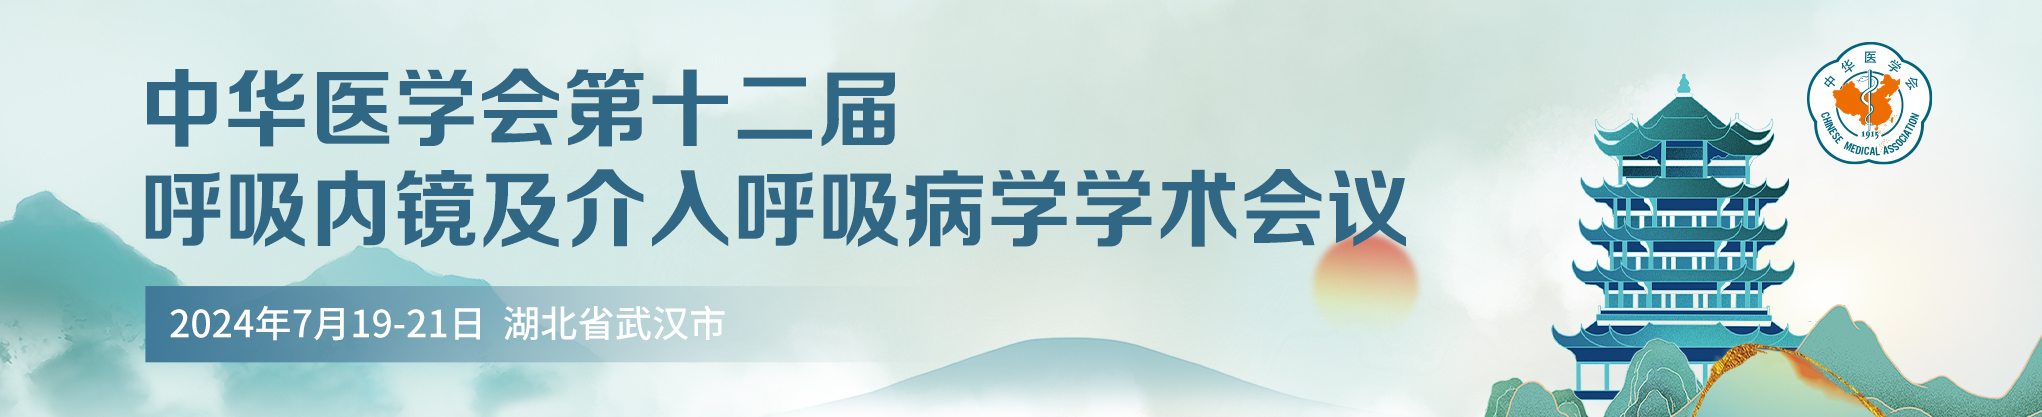 中华医学会第十二届呼吸内镜和介入呼吸病学学术会议